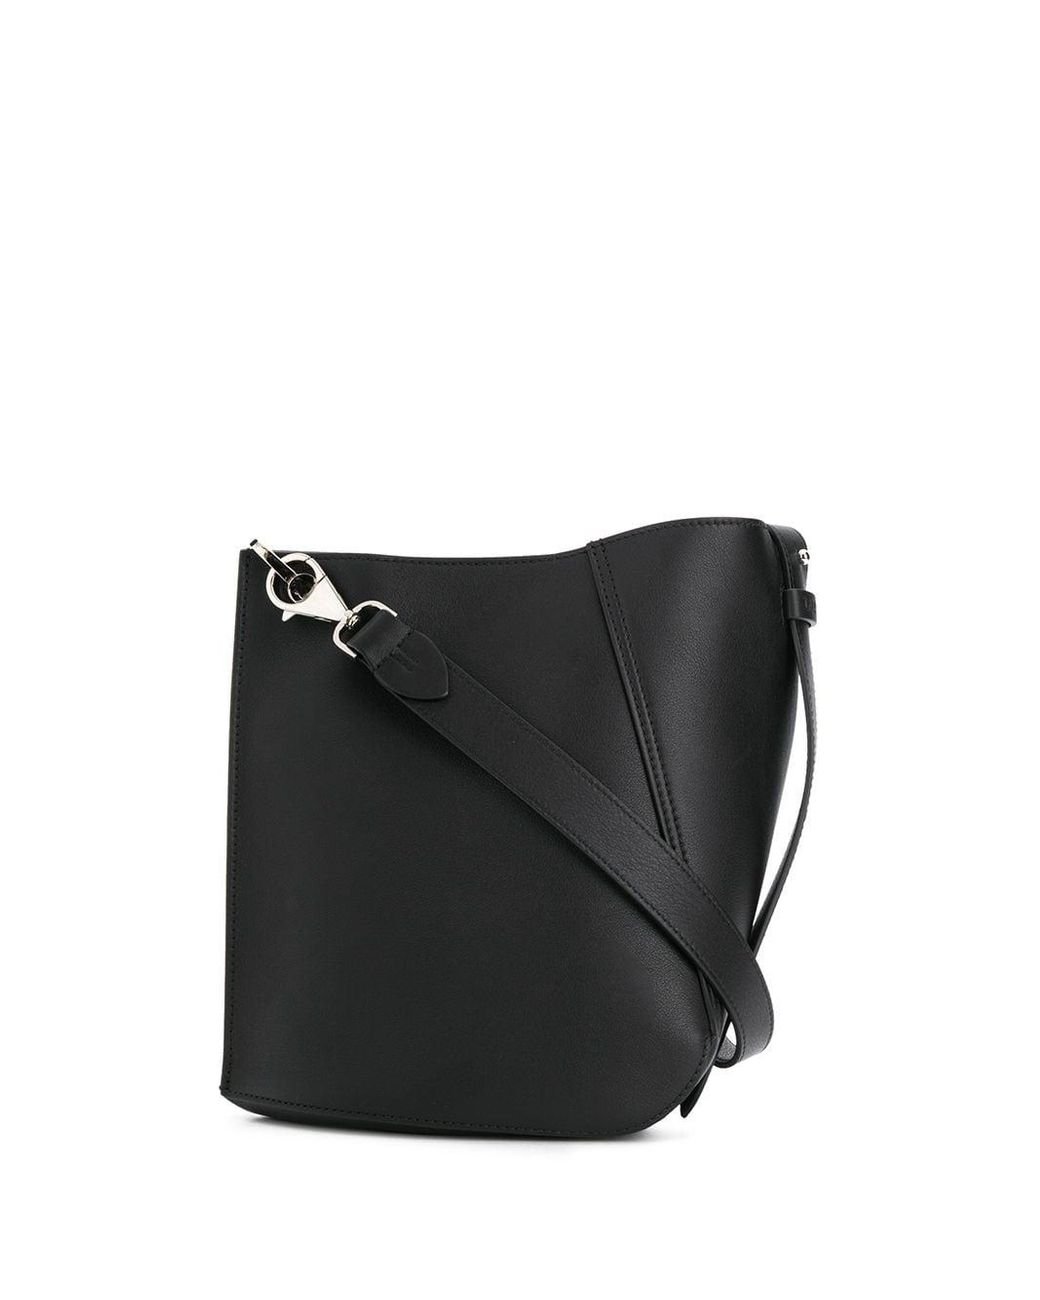 Lanvin Women's Hook Shoulder Bag